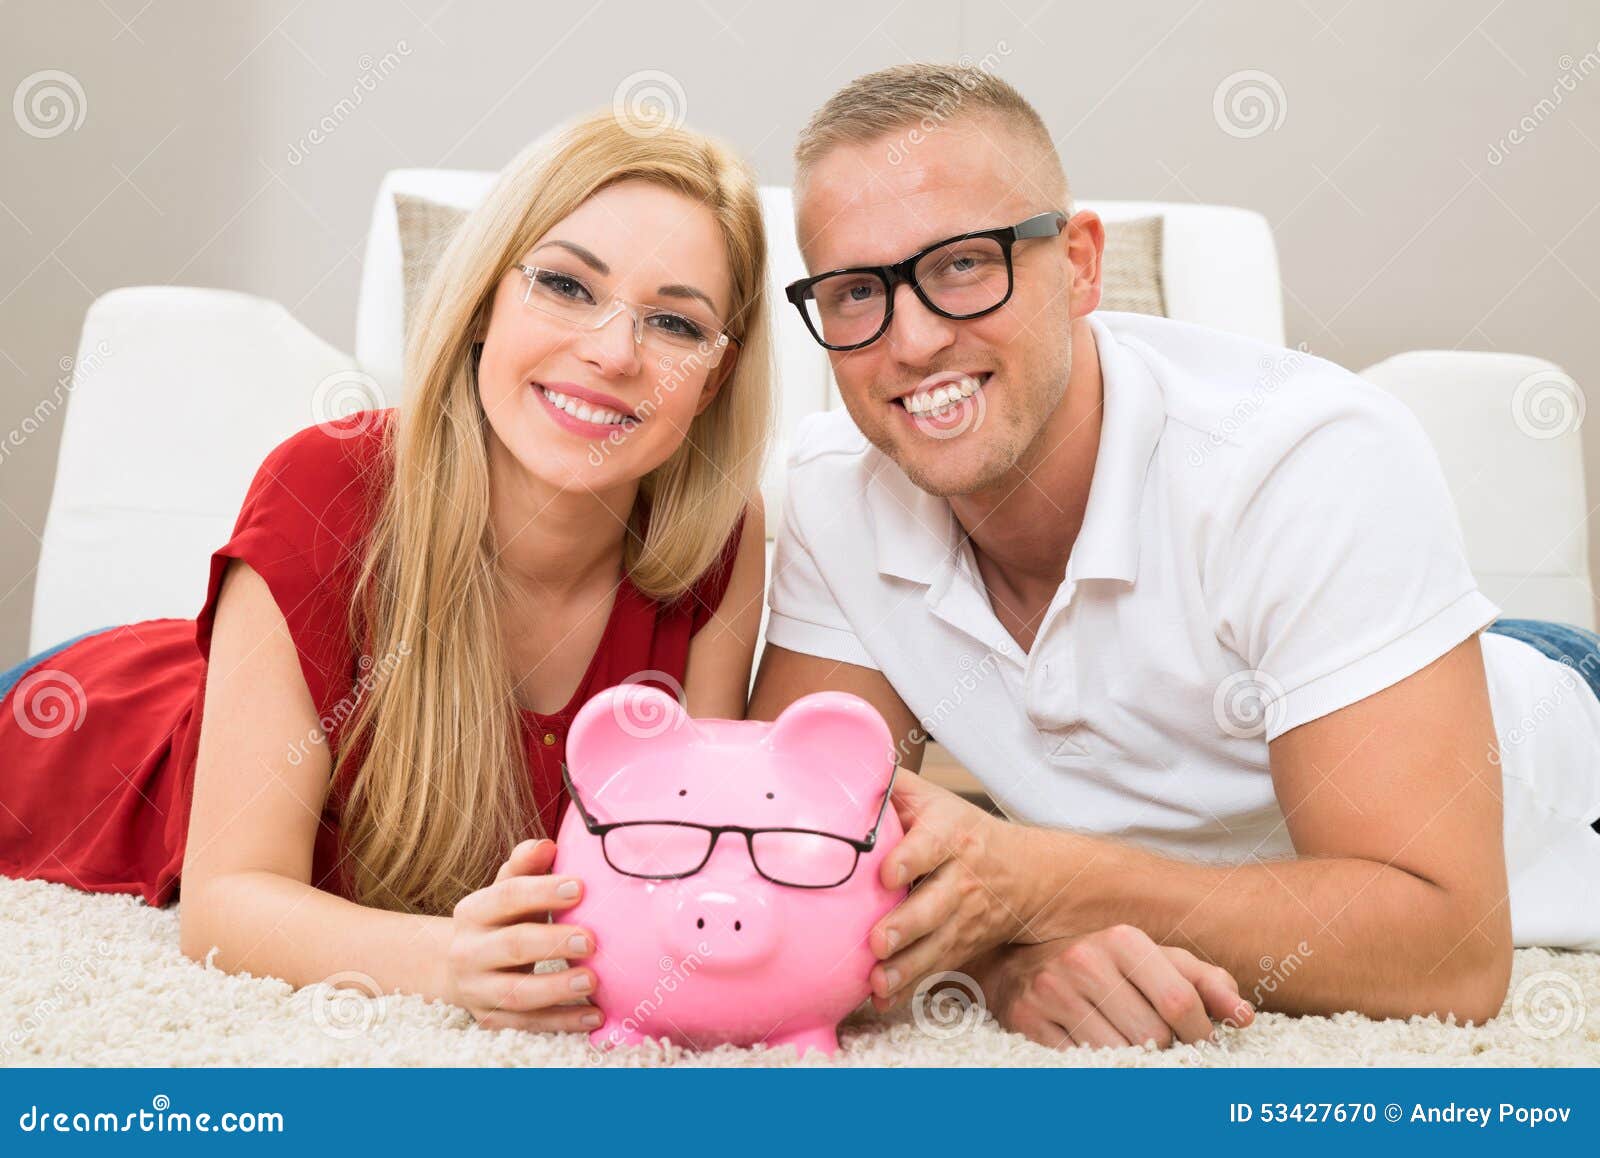 happy couple with piggybank